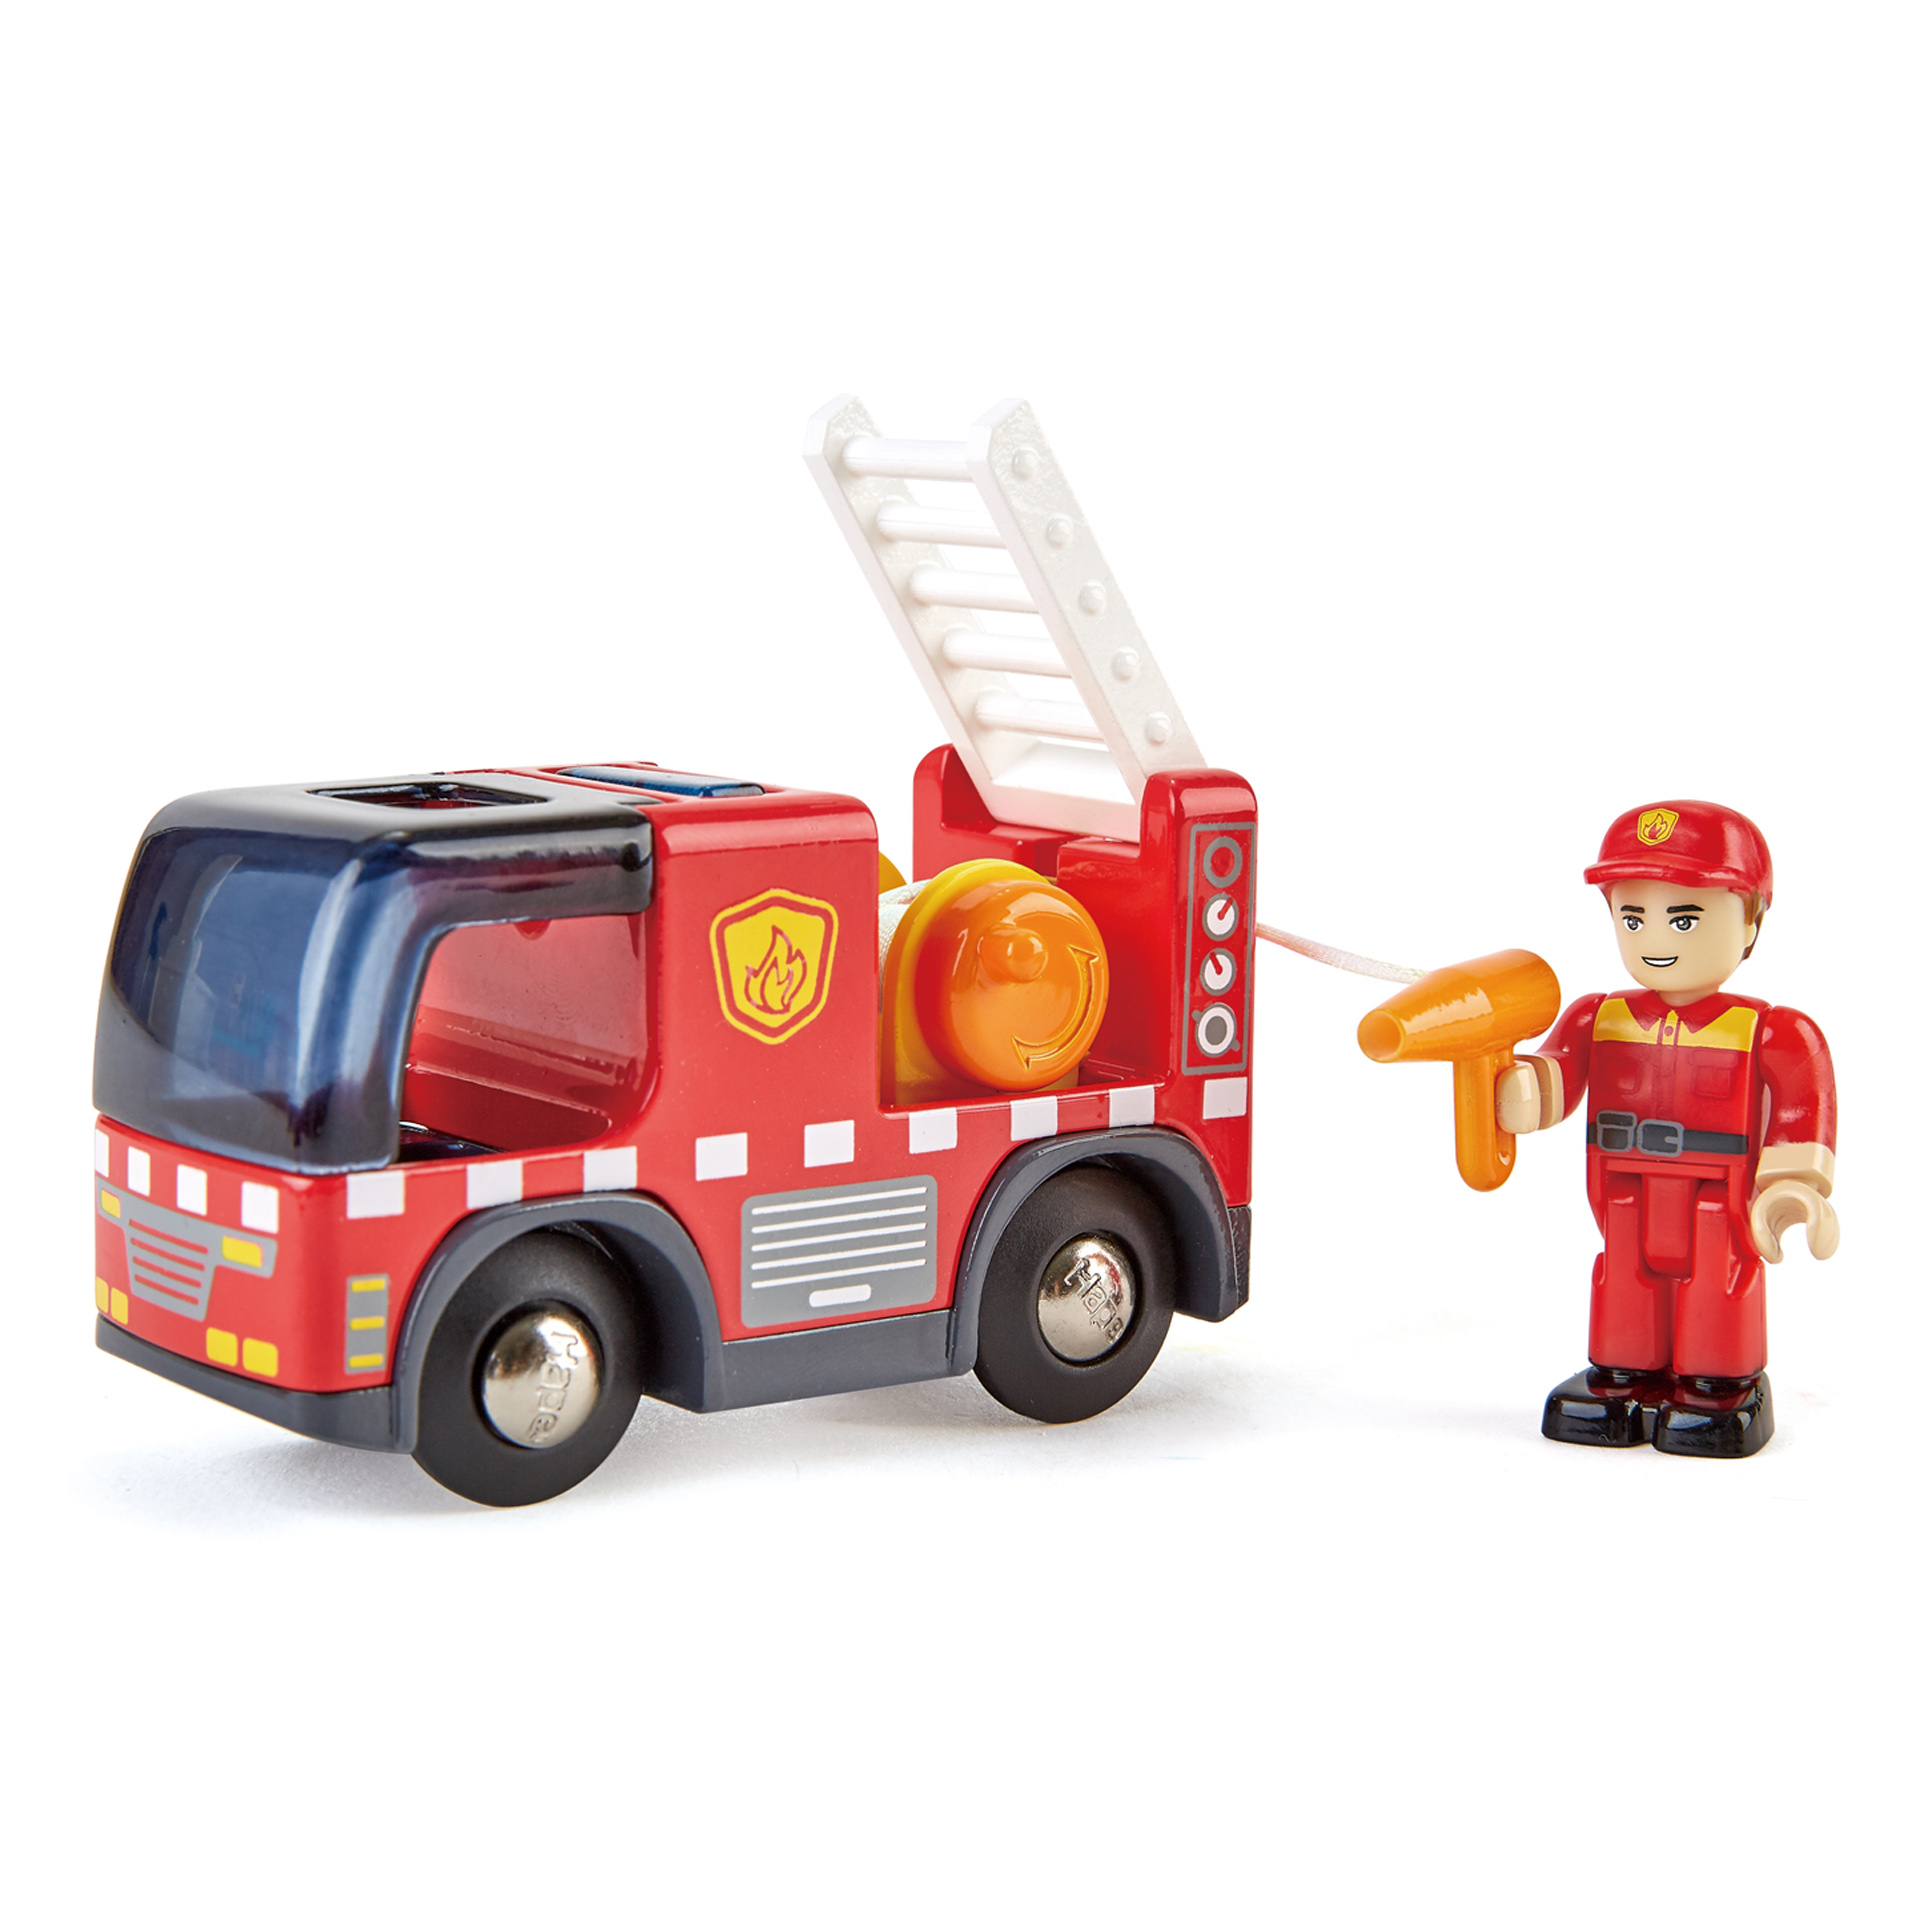 सायरन के साथ हाप फायर ट्रक | 2-टुकड़ा फायर ट्रक, फायरमैन खिलौना सेट